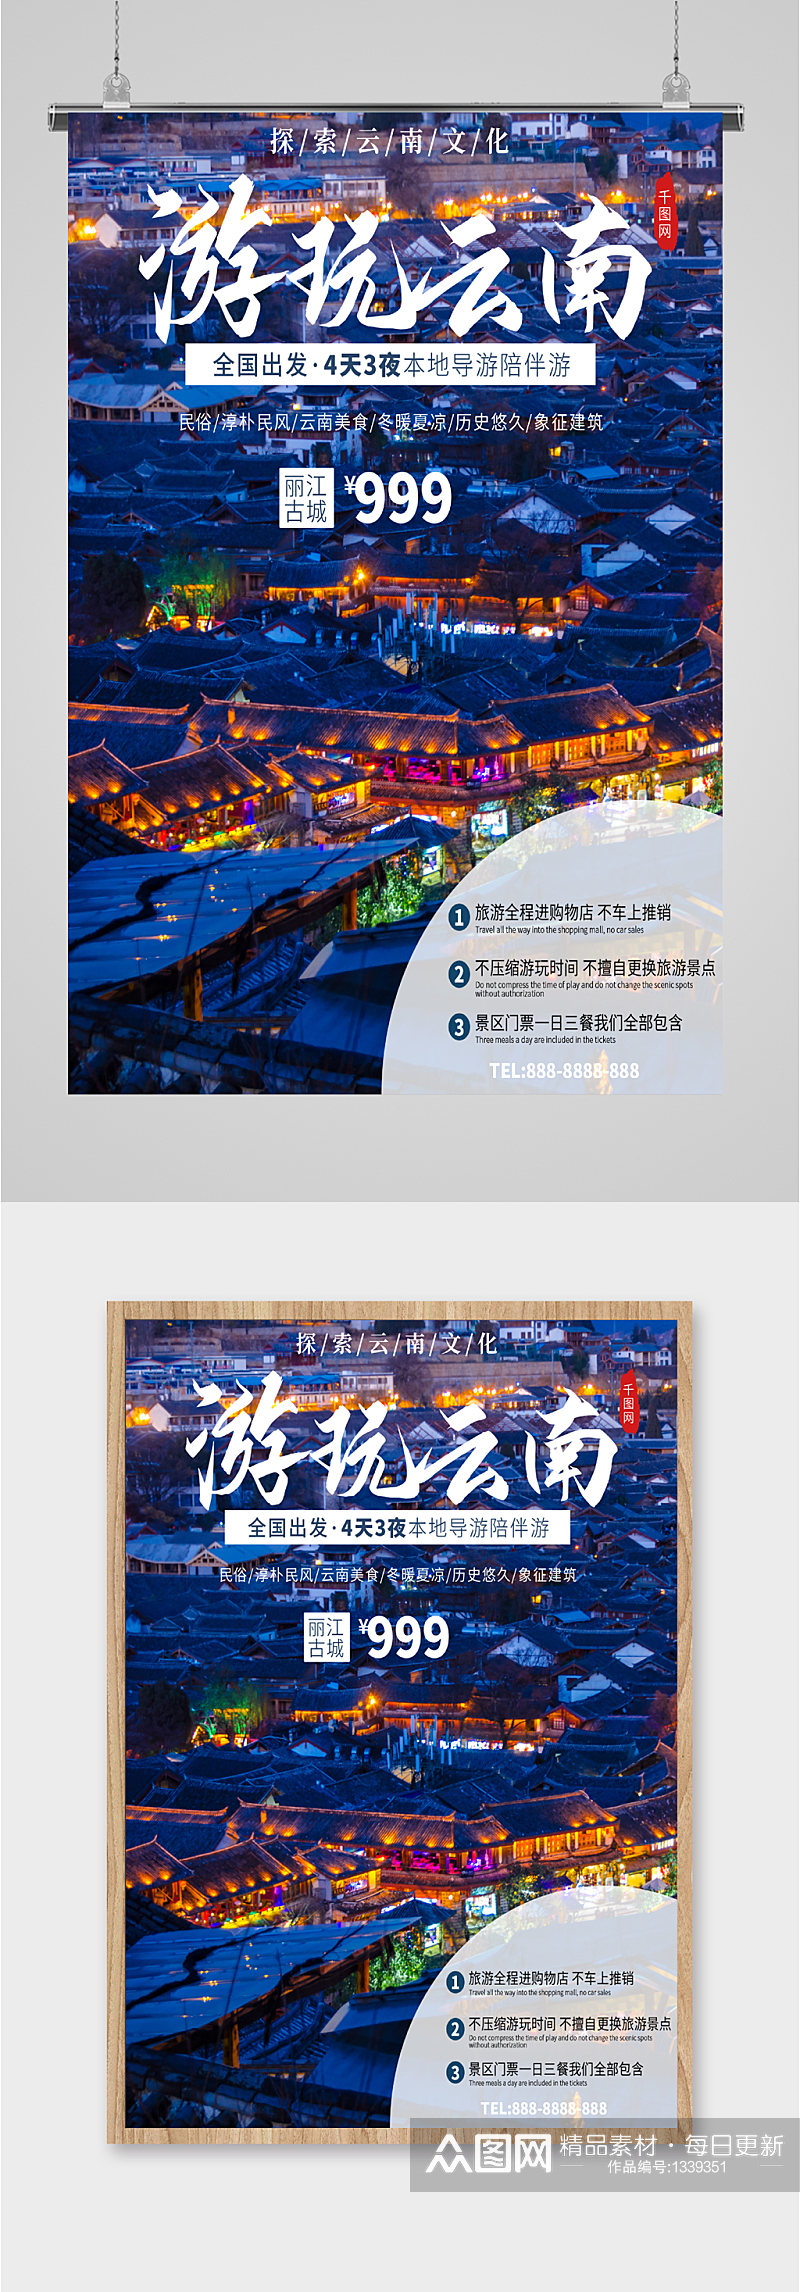 云南游玩旅行社宣传海报素材